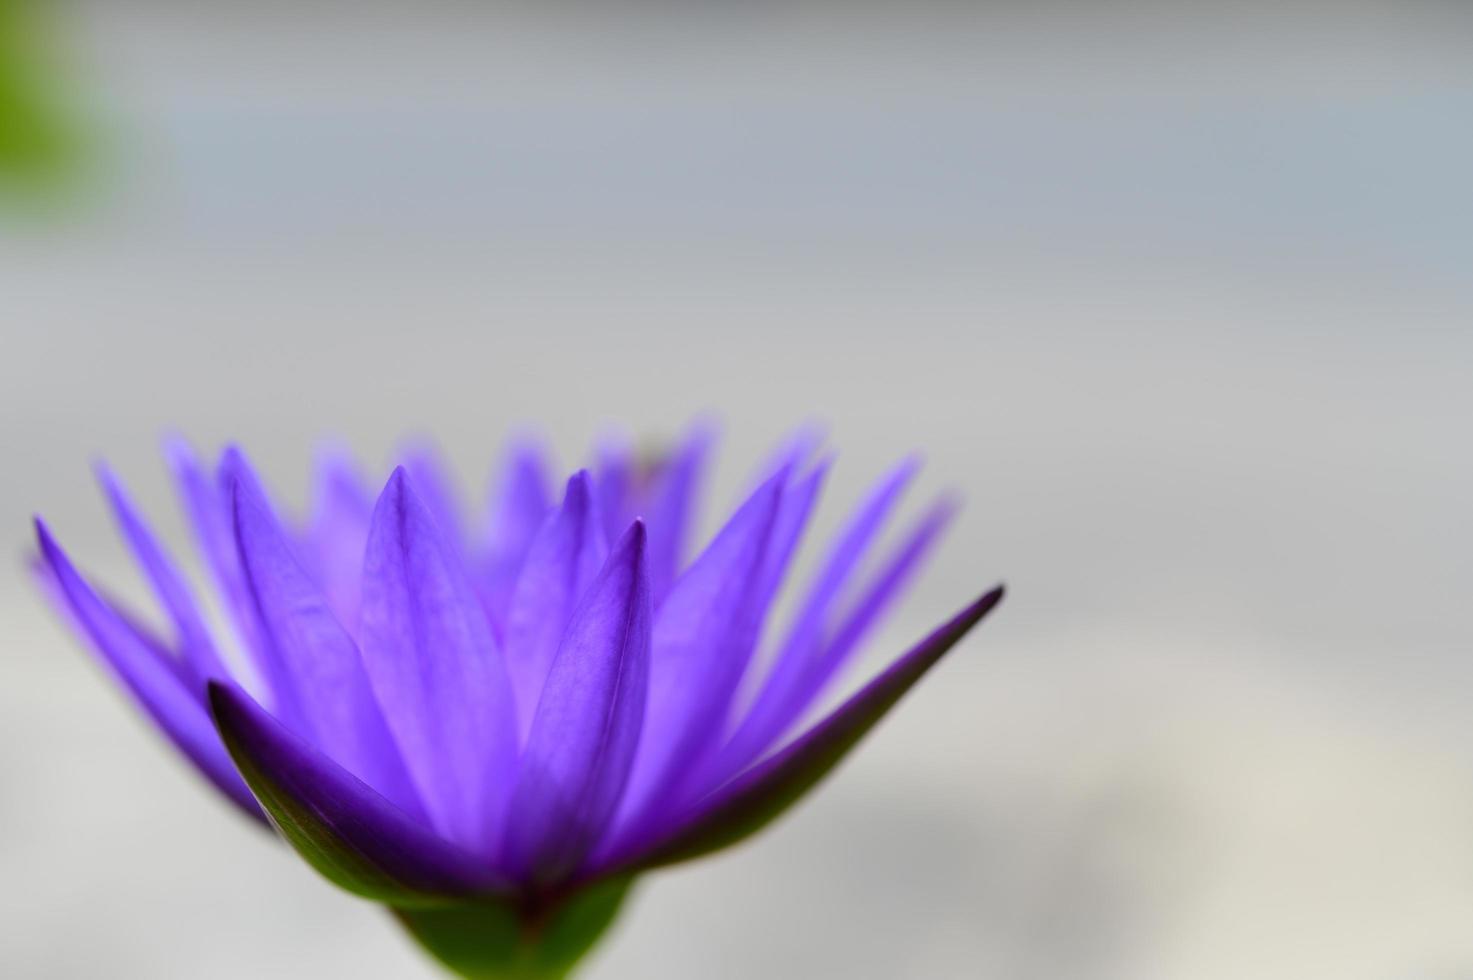 een paarse lotusbloem foto